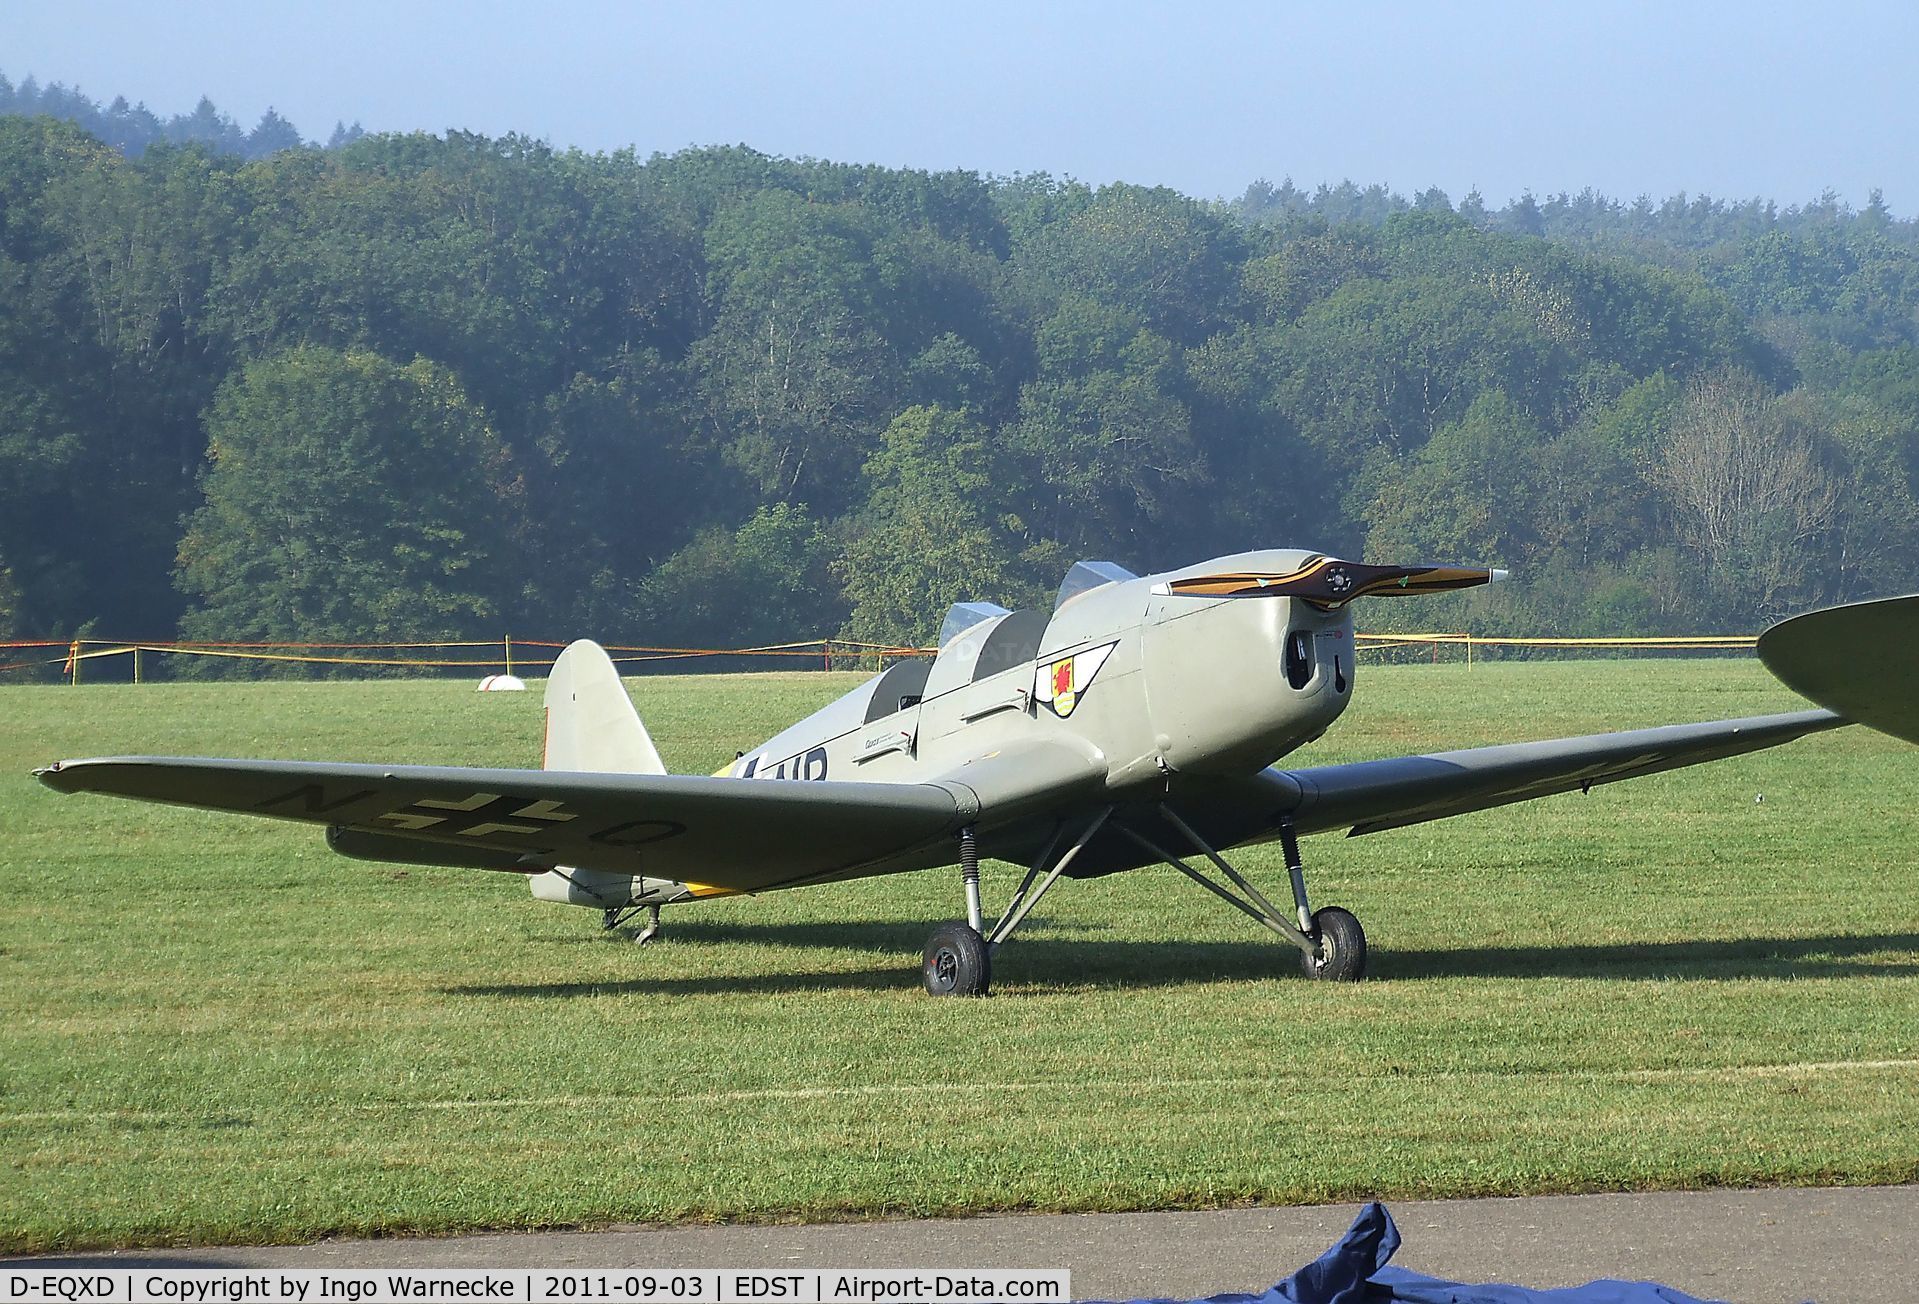 D-EQXD, Klemm Kl-35D C/N 5050, Klemm Kl 35D at the 2011 Hahnweide Fly-in, Kirchheim unter Teck airfield